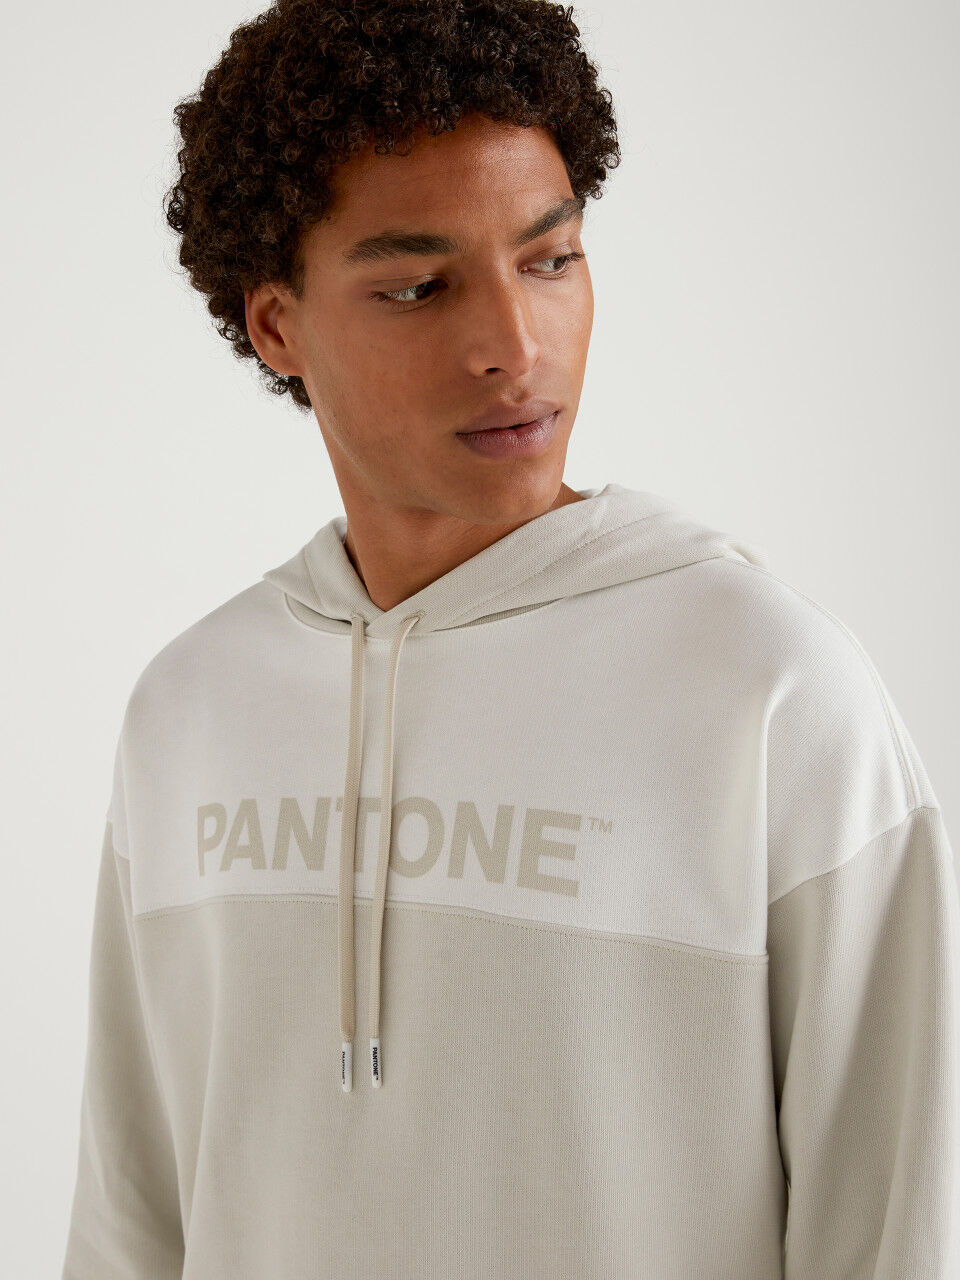 BenettonxPantone™ gray sweatshirt